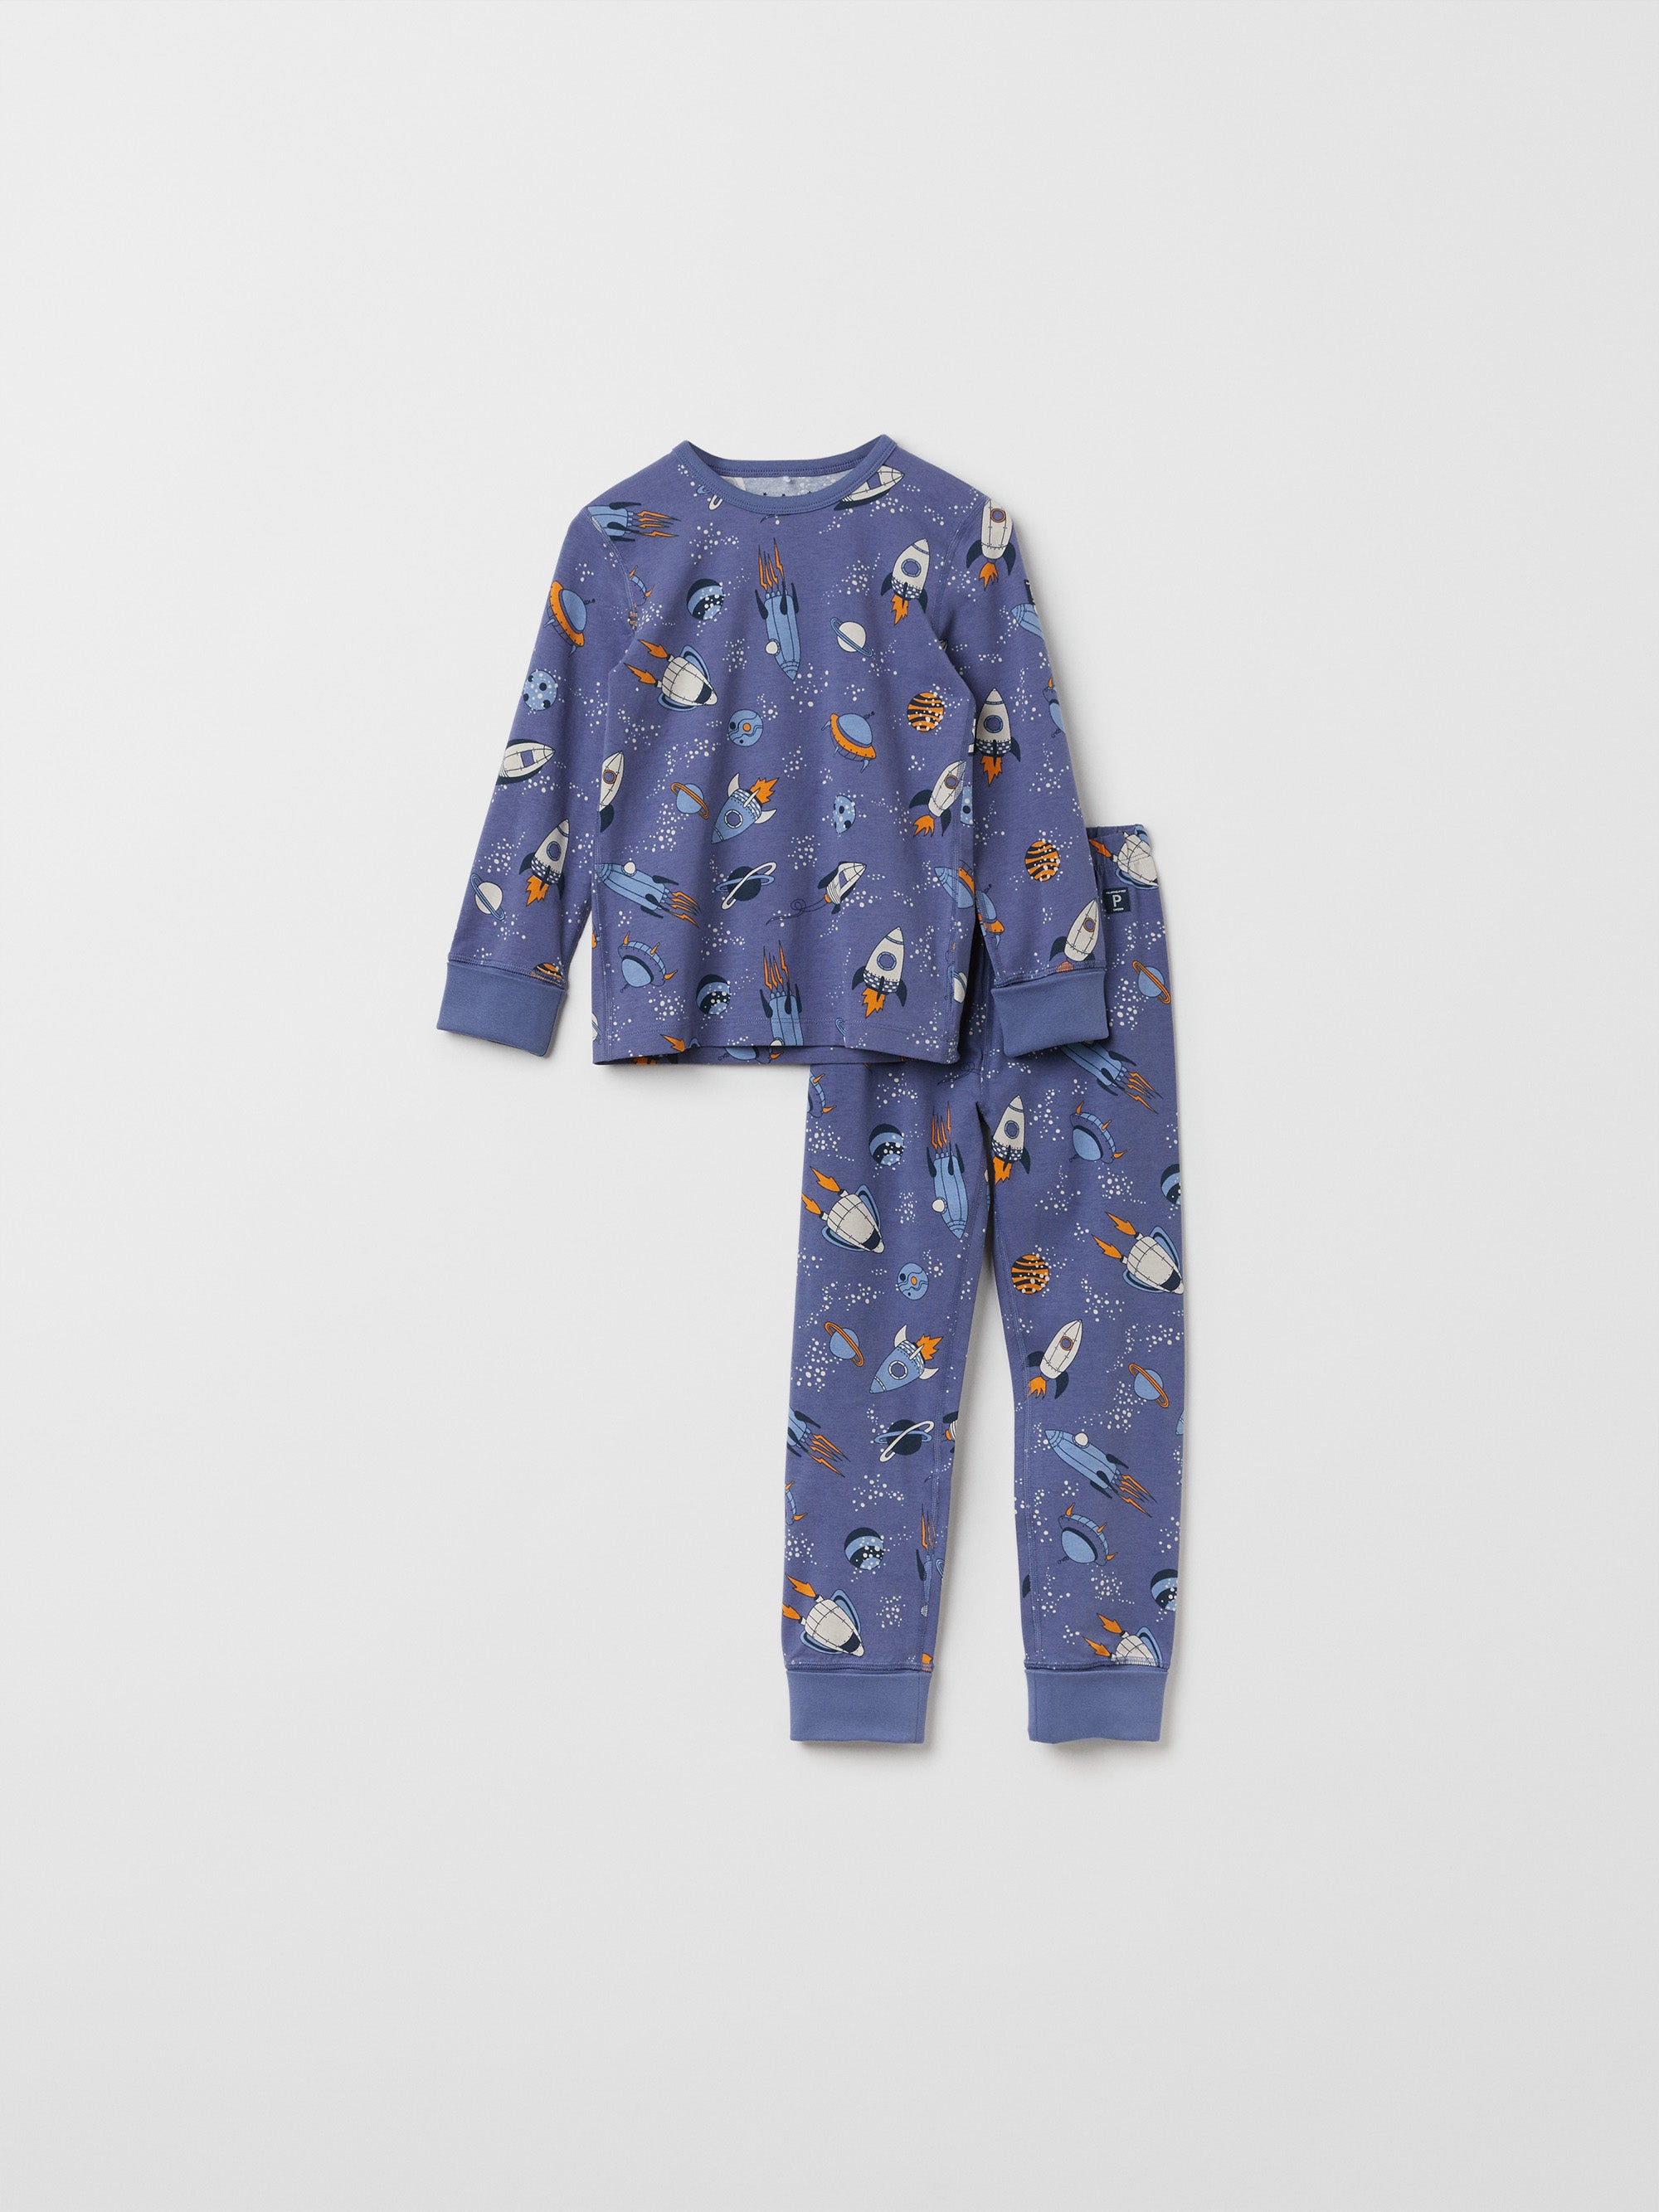 Space Print Kids Pyjamas